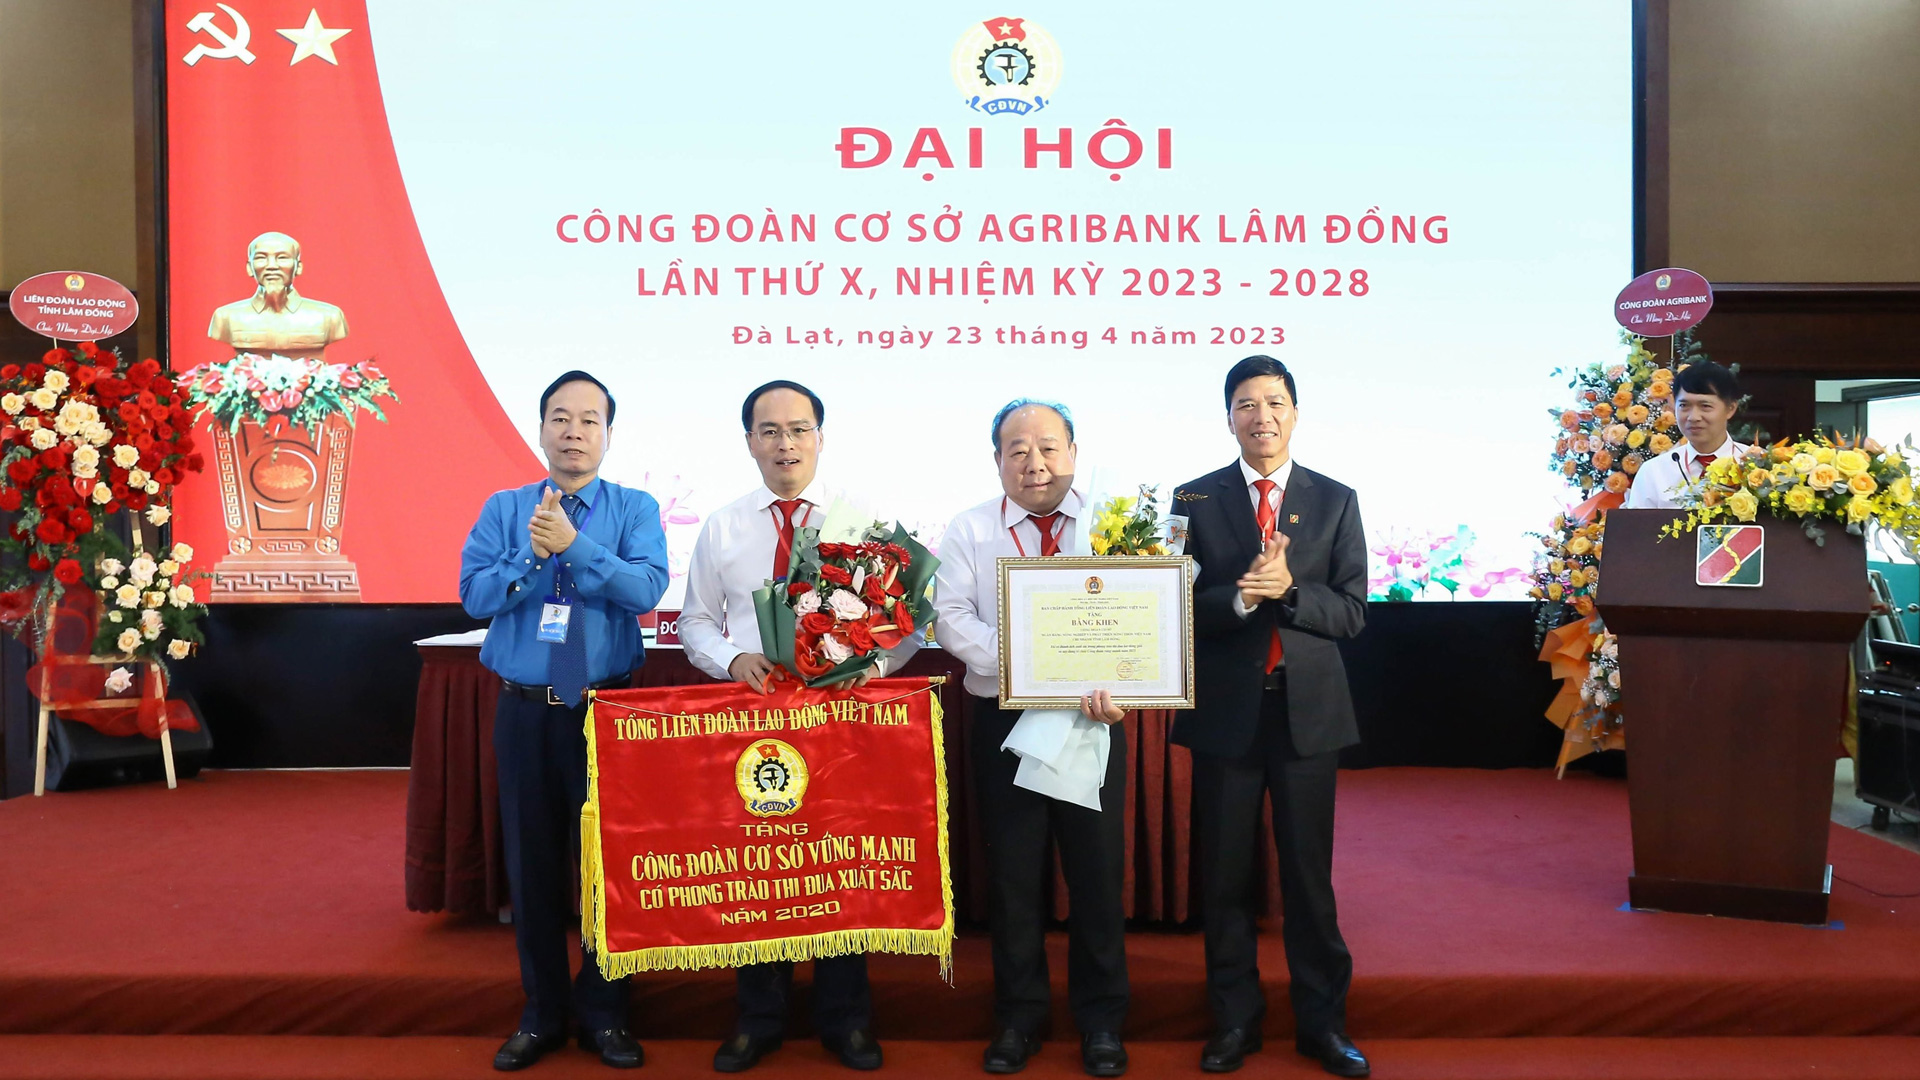 Thi đua là động lực nội sinh mạnh mẽ tại Agribank Lâm Đồng